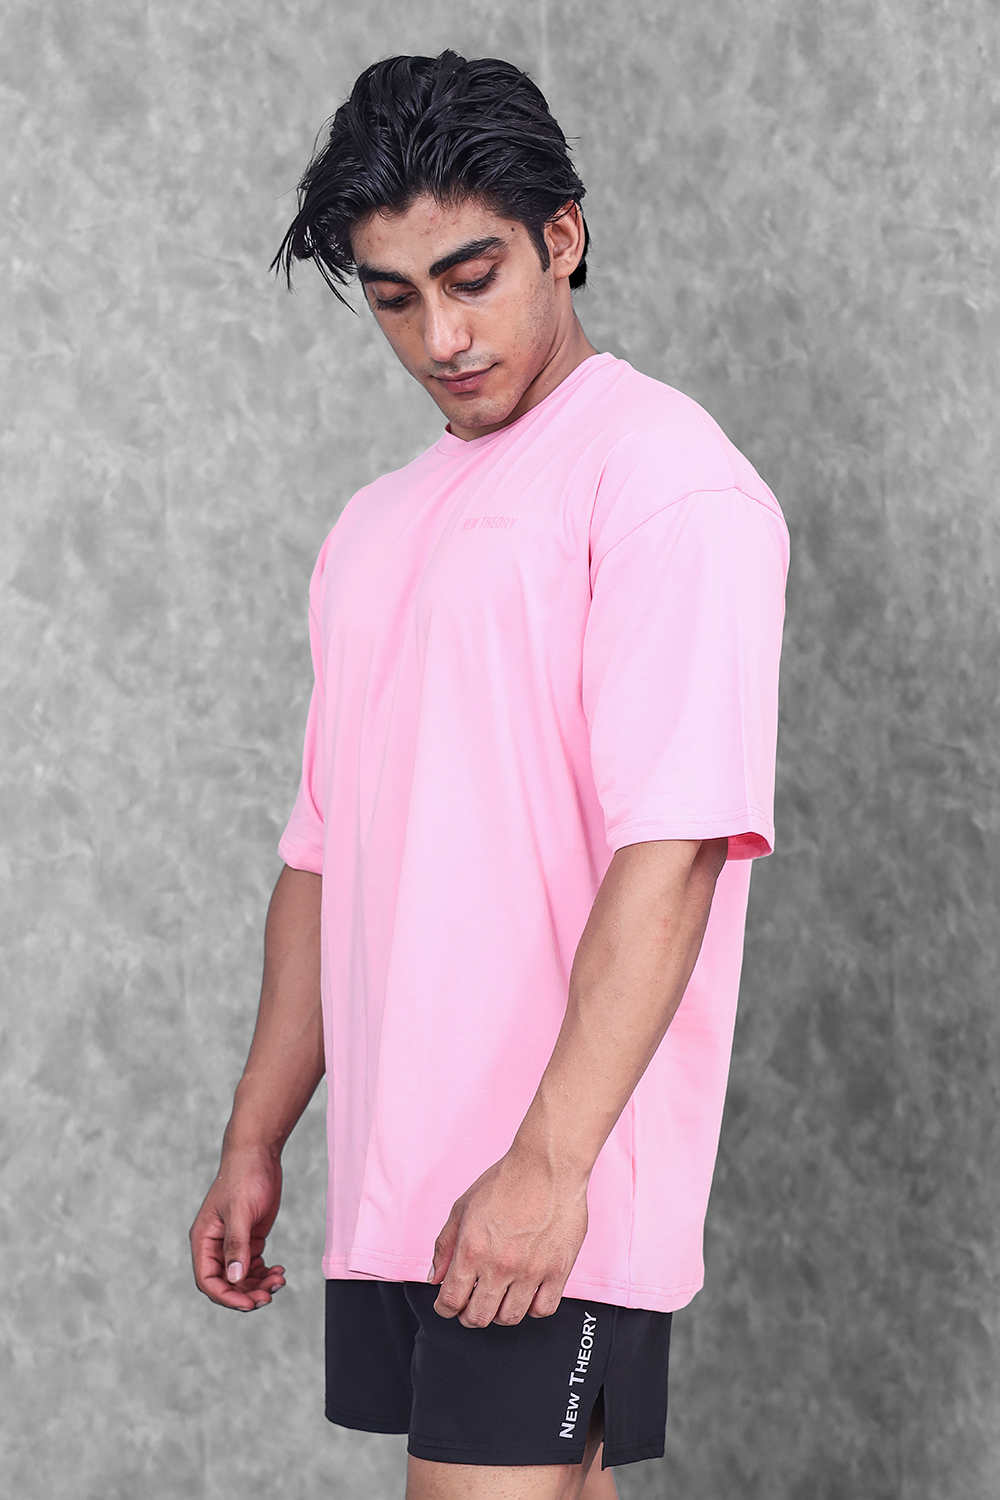 Alpha Oversize T-shirt - Pink